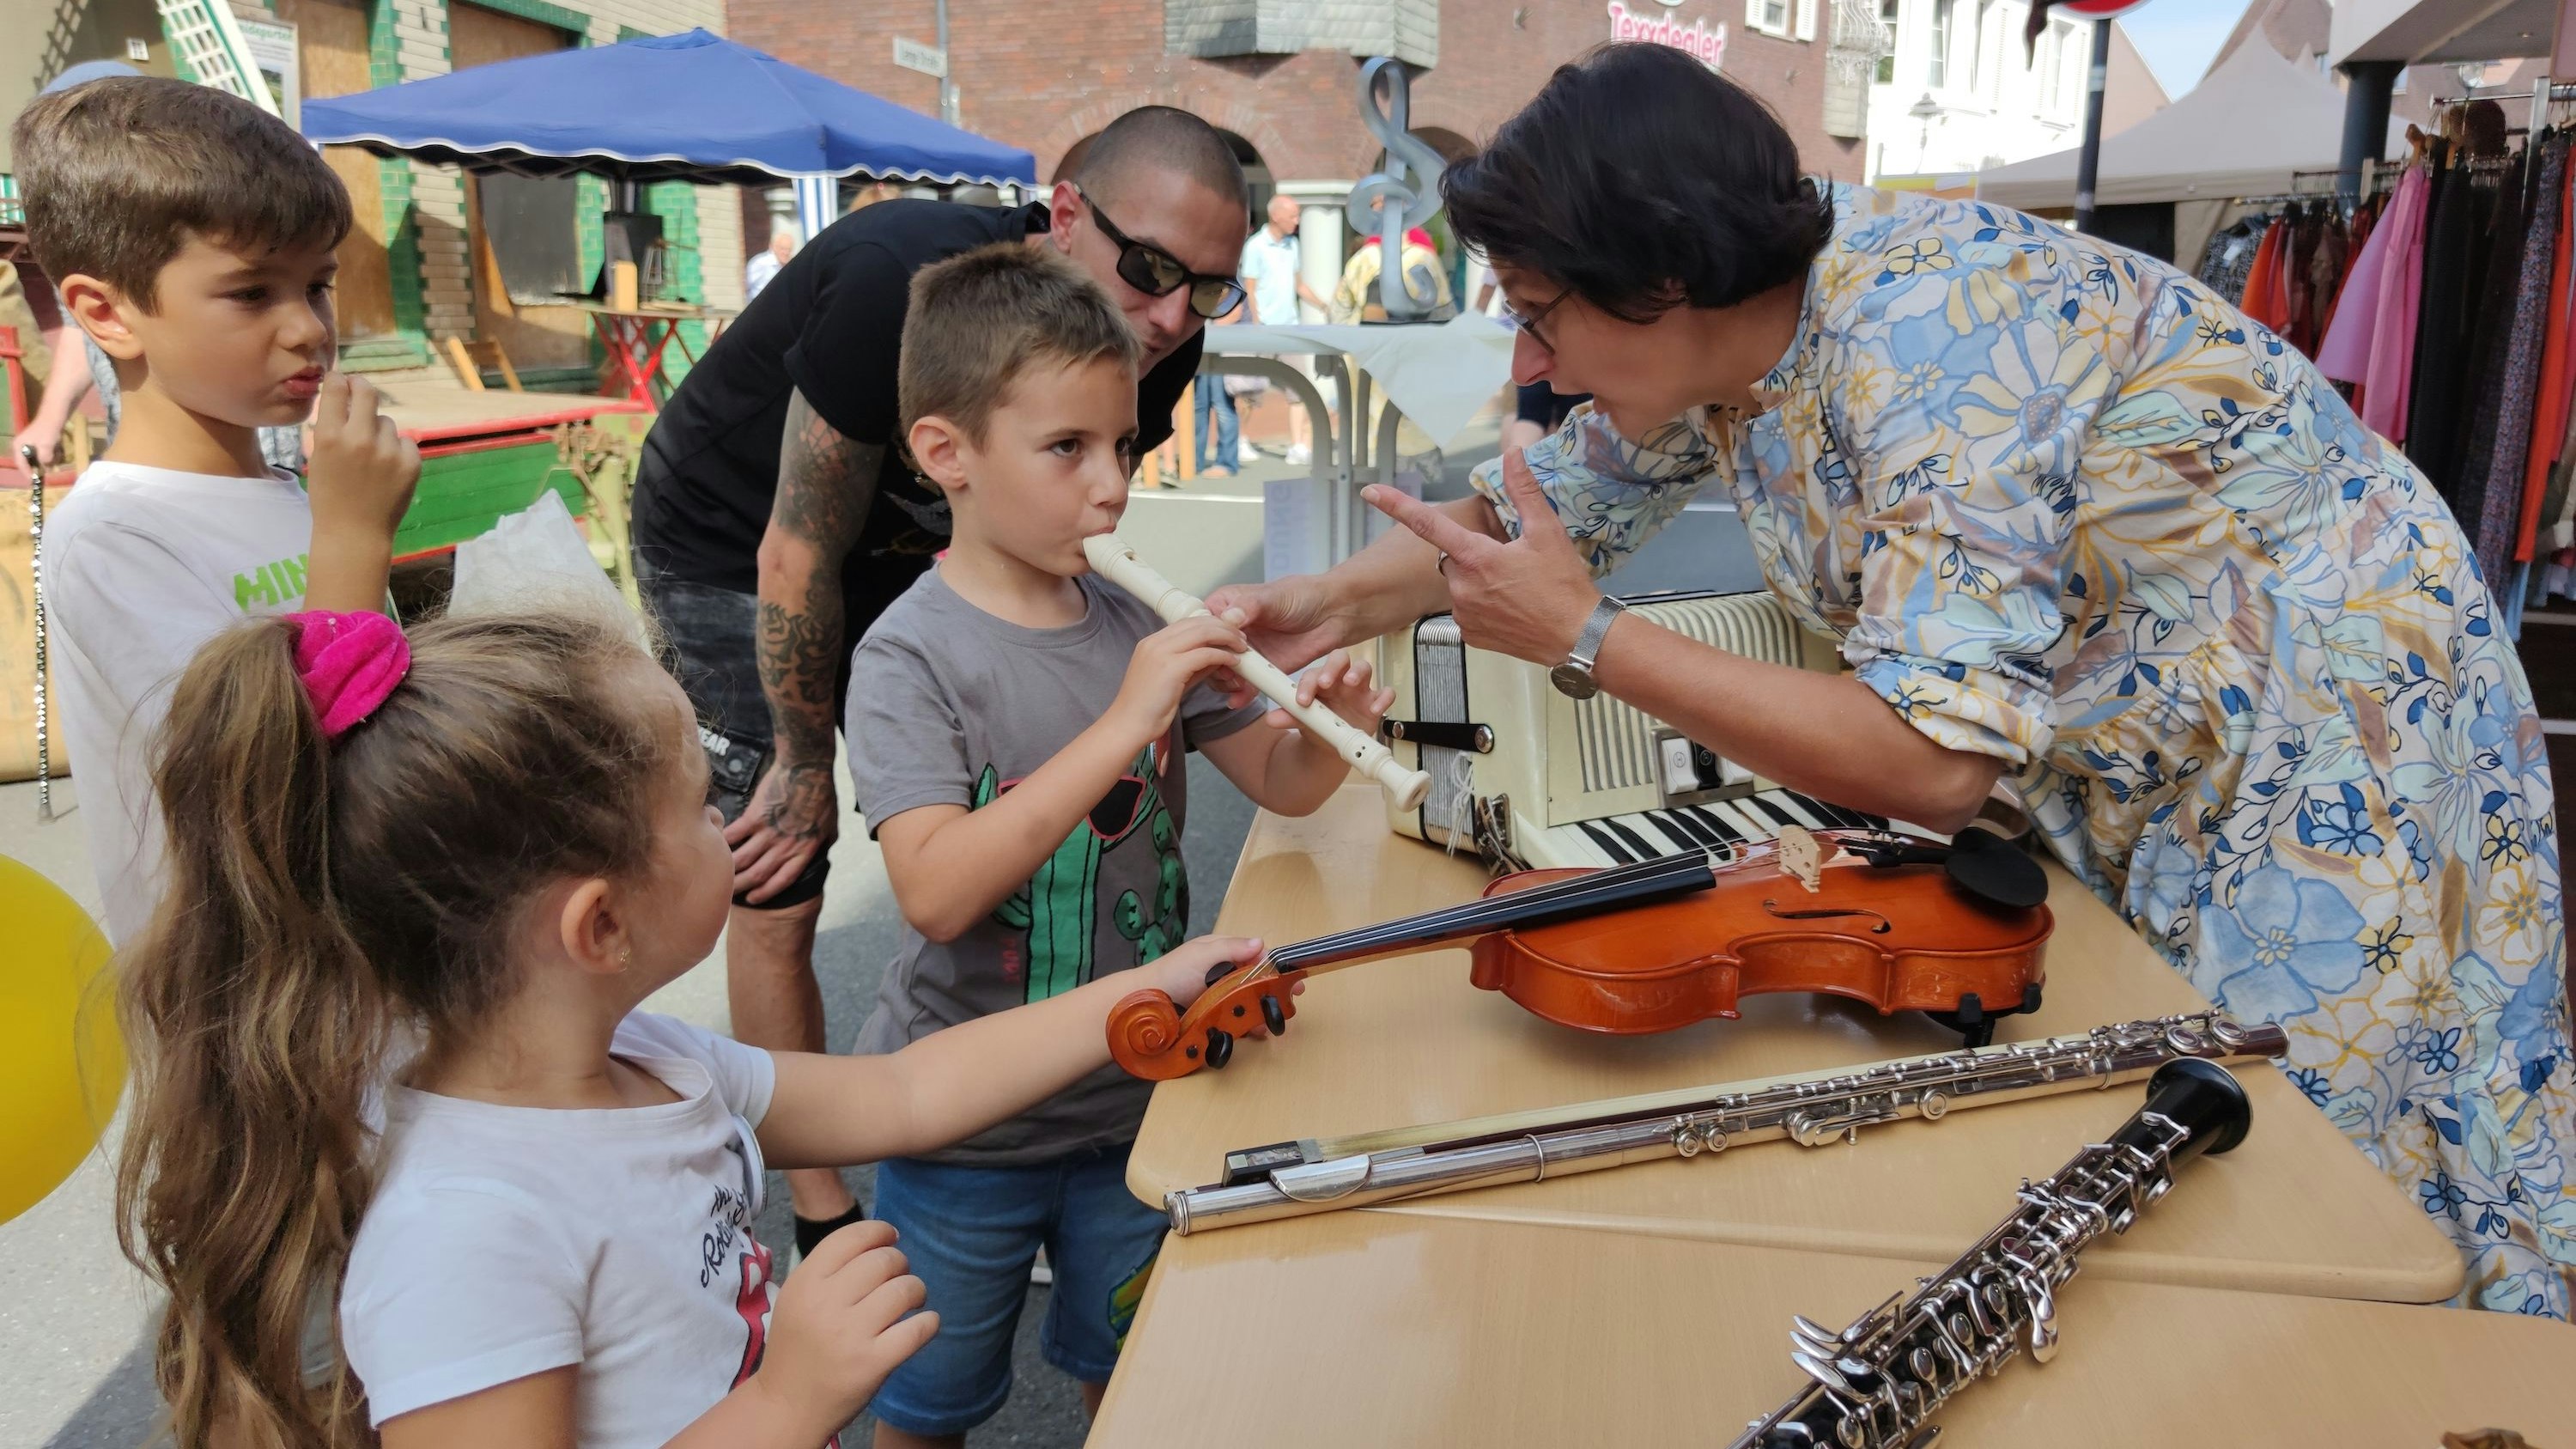 Mitmachen ausdrücklich erwünscht: Bei der Musikschule Romberg konnten Instrumente ausprobiert werden. Foto: Röttgers